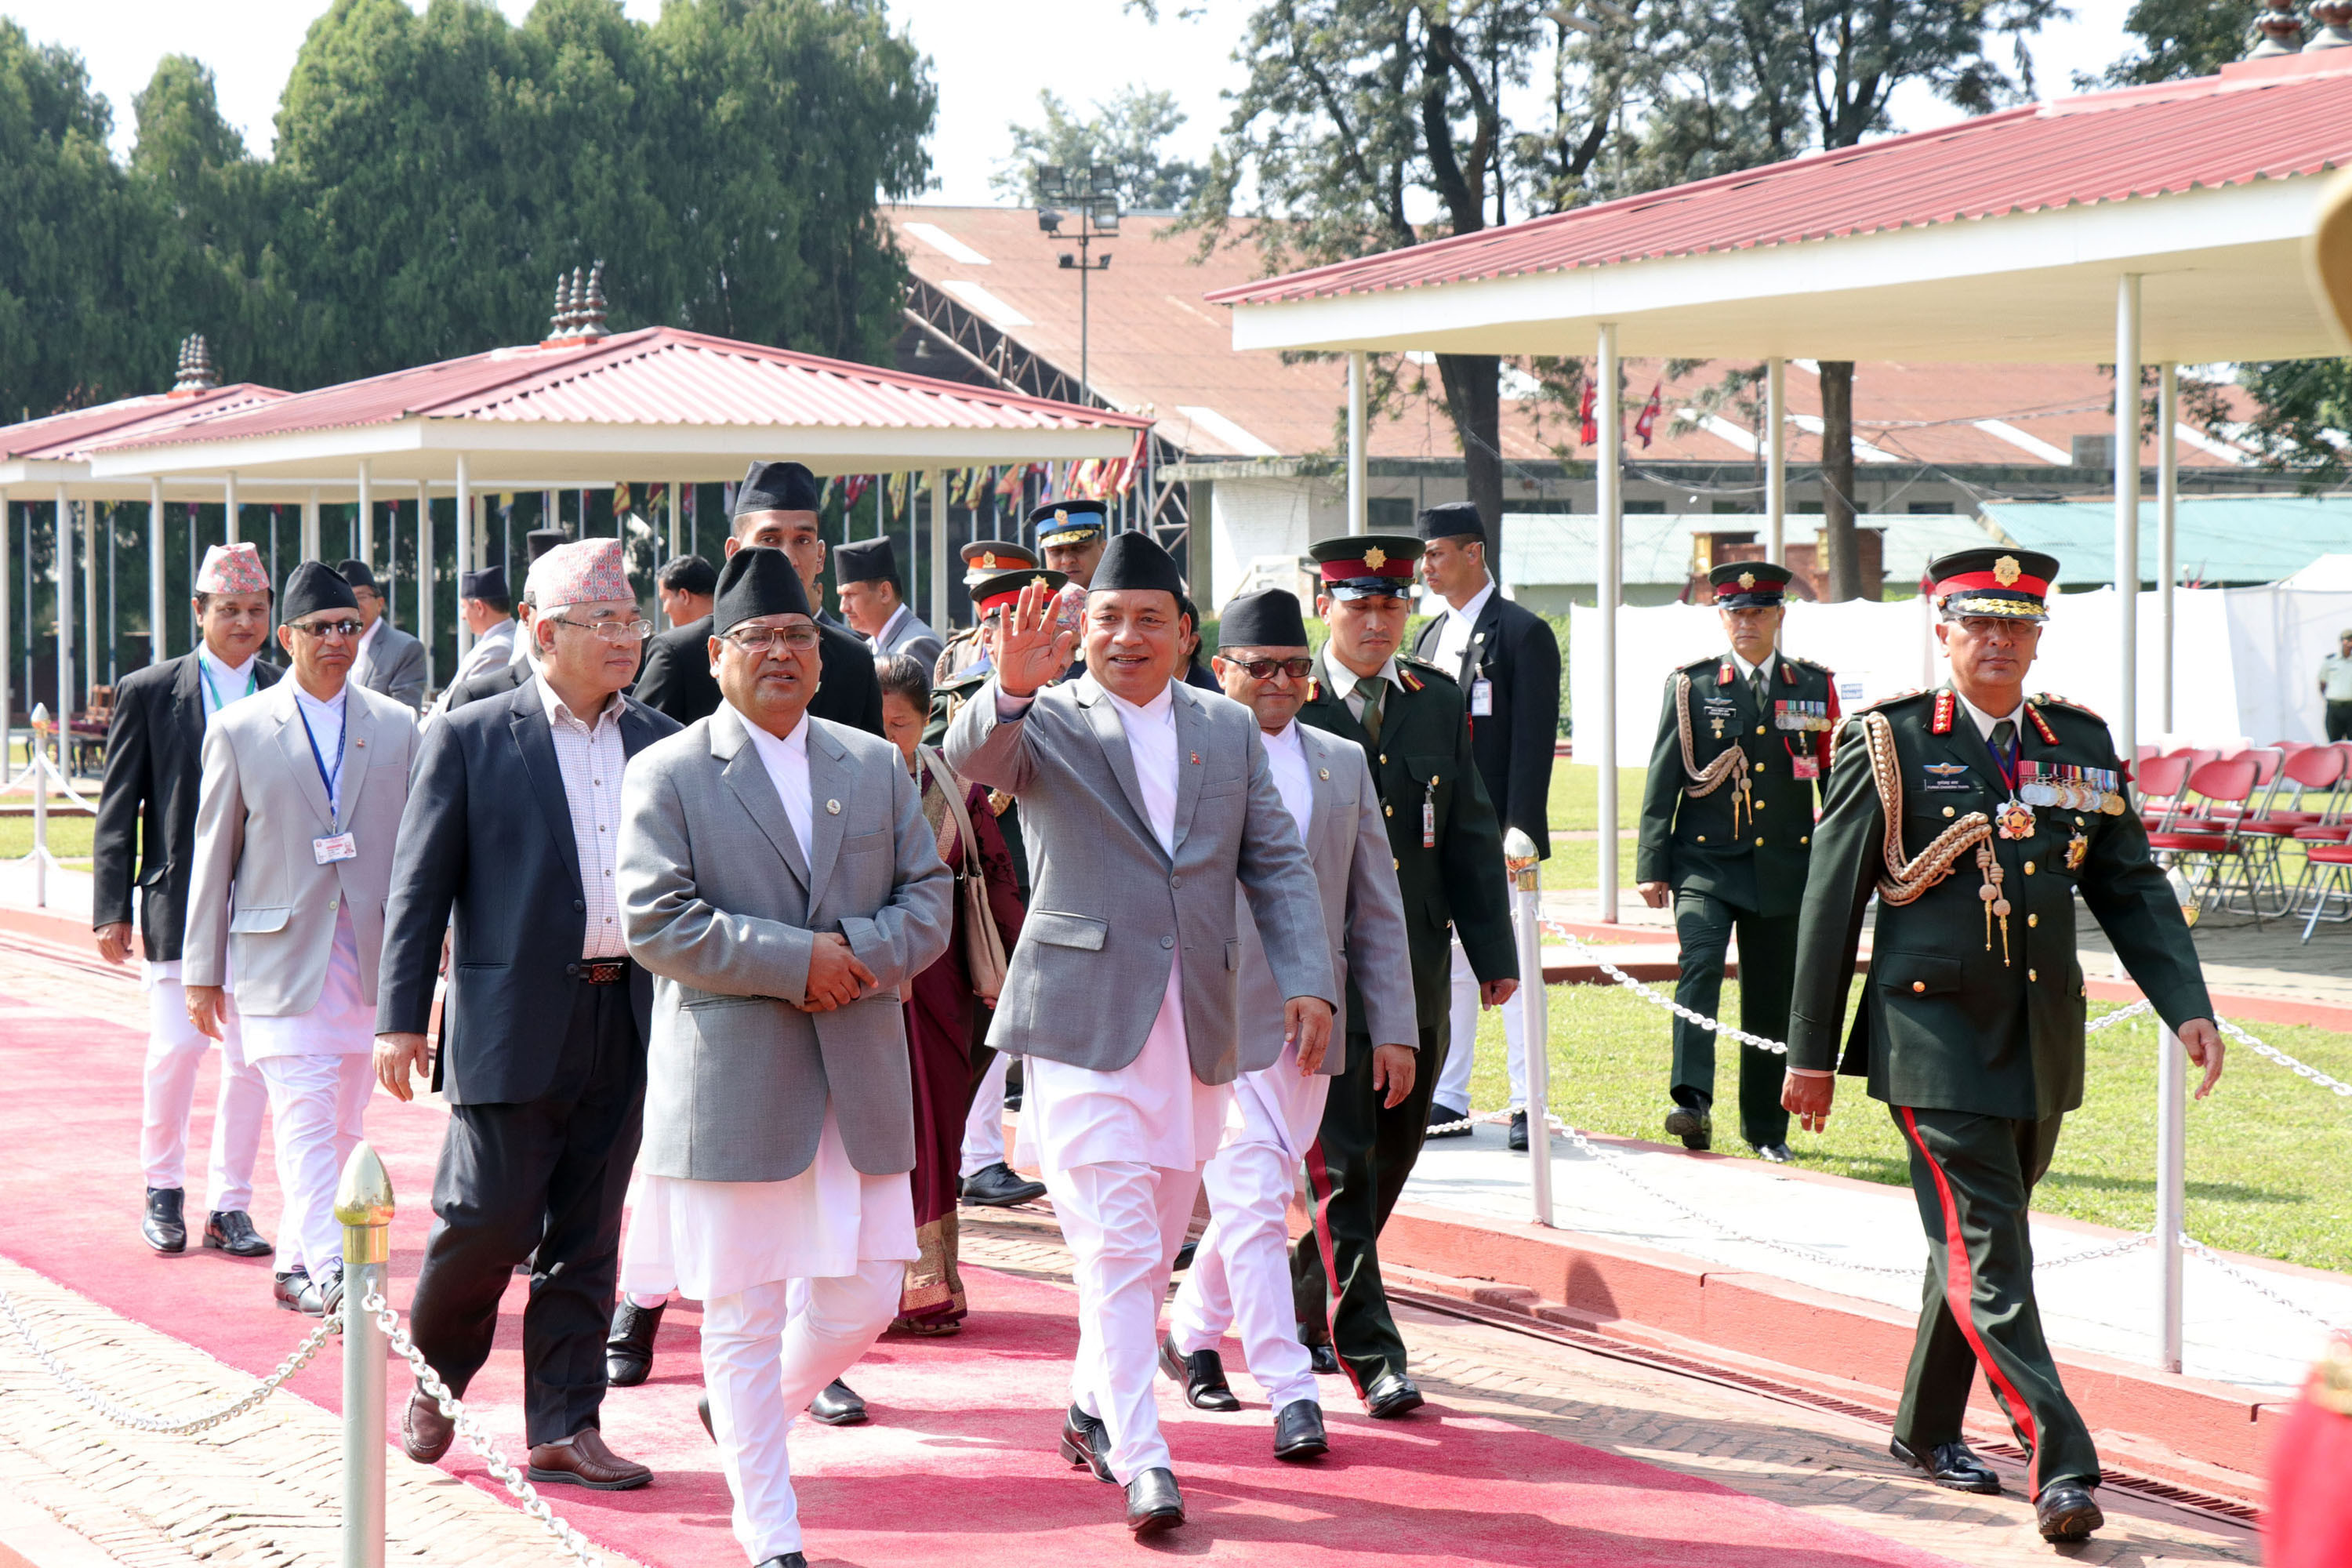 उपराष्ट्रपति नन्दबहादुर पुन चीनको छ दिने औपचारिक भ्रमण पुरा गरी नेपाल फर्कने क्रममा सोमबार त्रिभुवन अन्तर्राष्ट्रिय विमानस्थलमा। तस्वीर : रासस